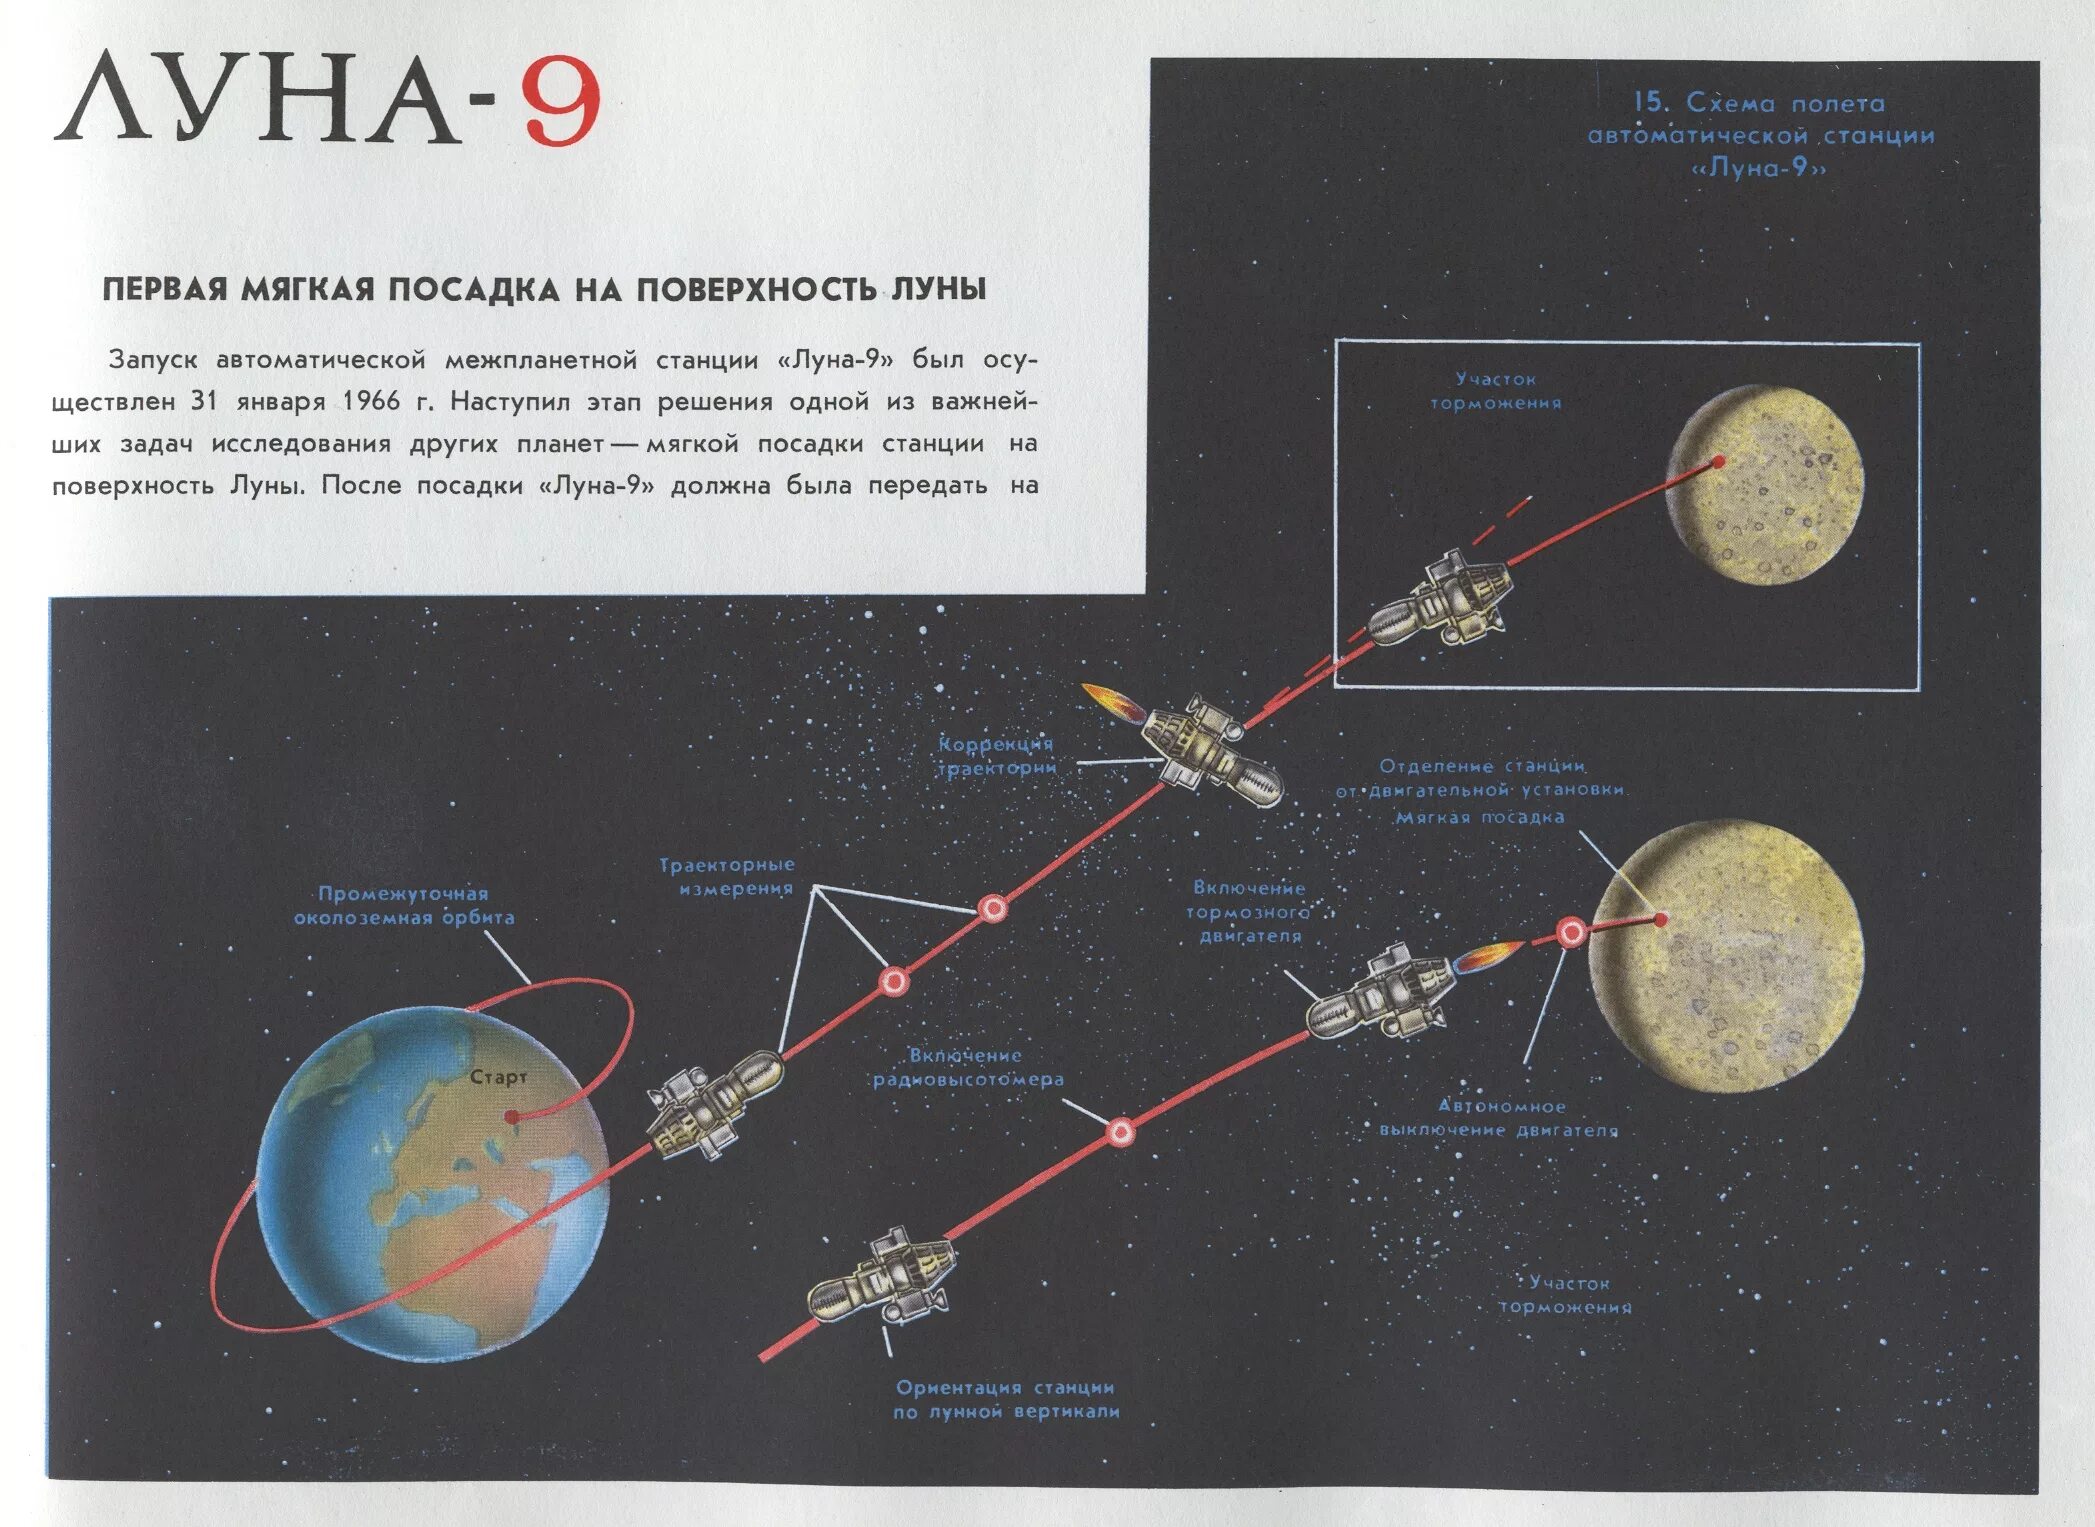 Какой аппарат совершил первую посадку на луну. Станция Луна 9 мягкая посадка на луну. Луна-9 схема посадки. Луна-9 автоматическая межпланетная станция. Схема посадки лунной станции СССР.